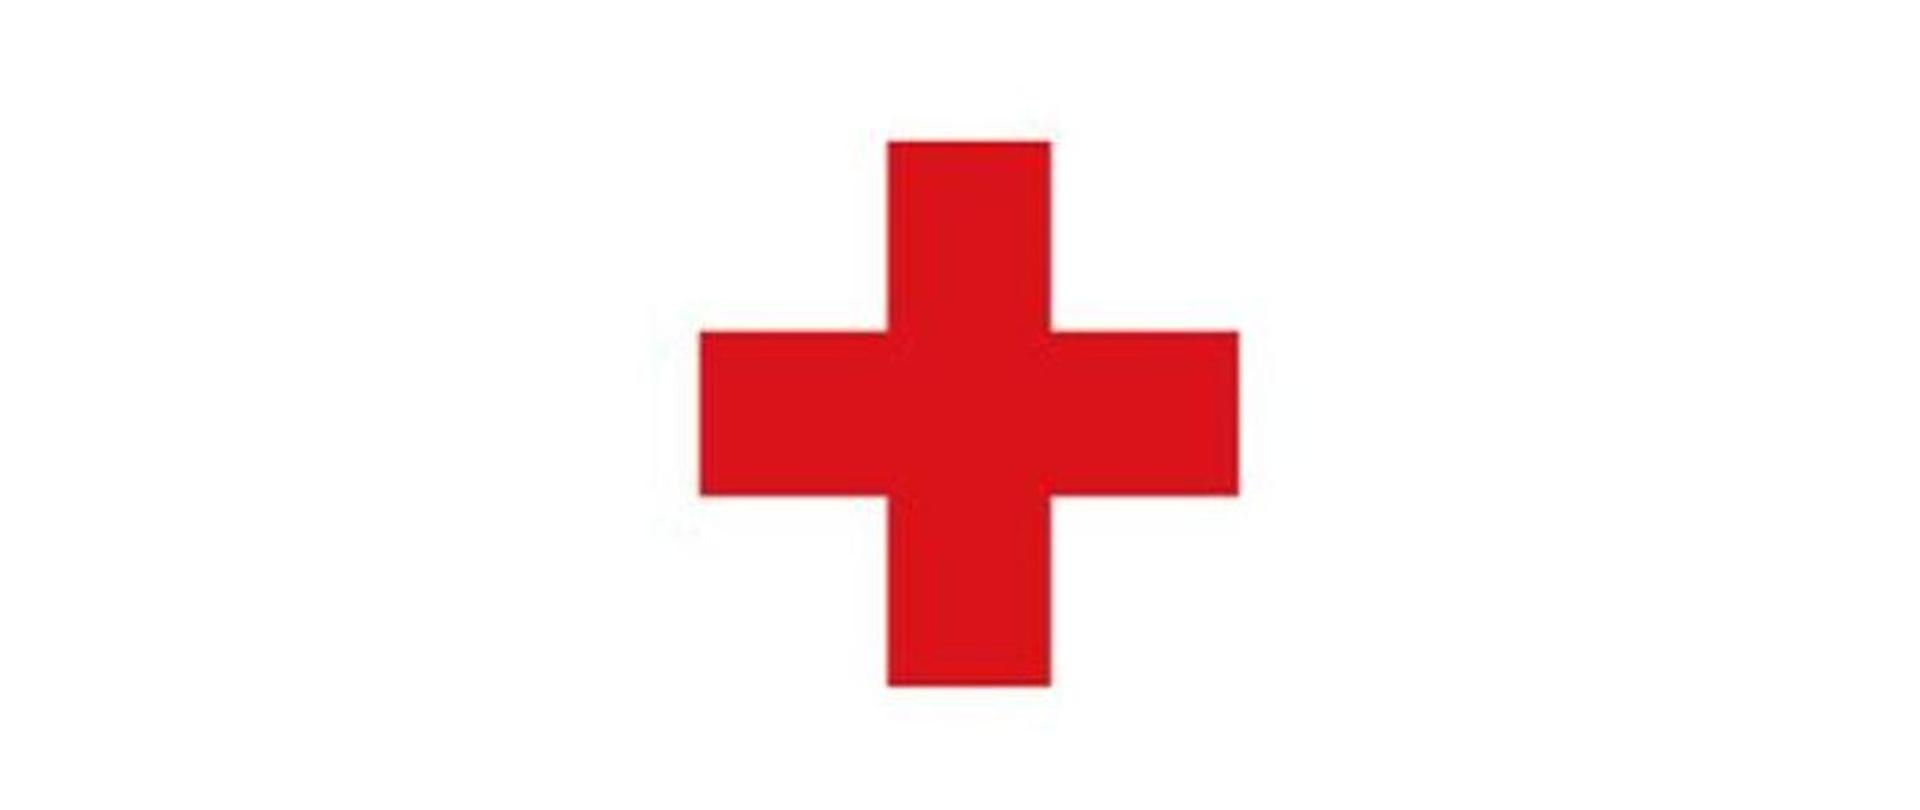 Zdjęcie przedstawia czerwony Krzyż na białym tle